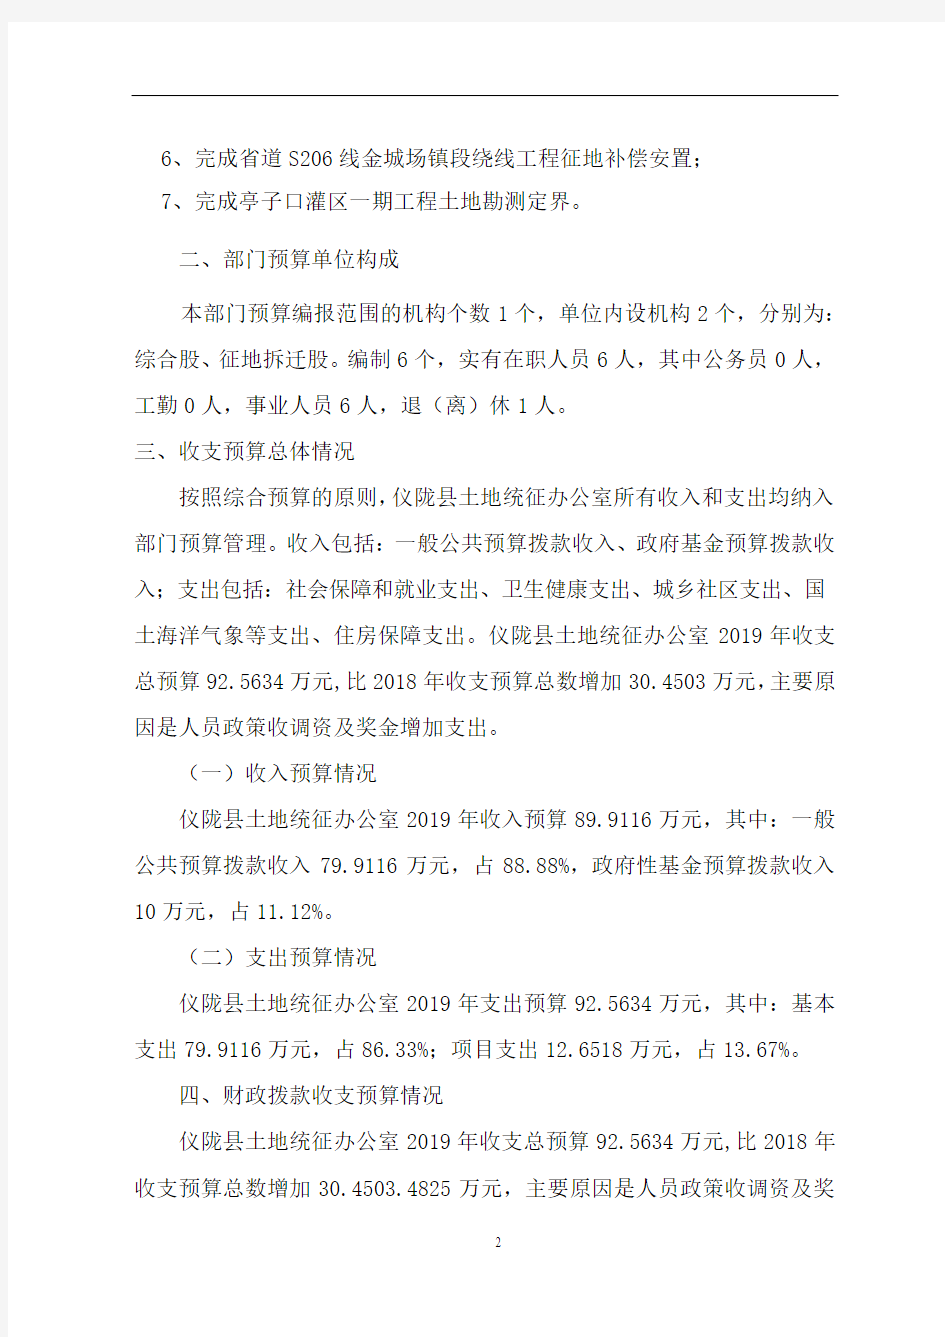 仪陇县土地统征办公室2019年部门预算编制说明